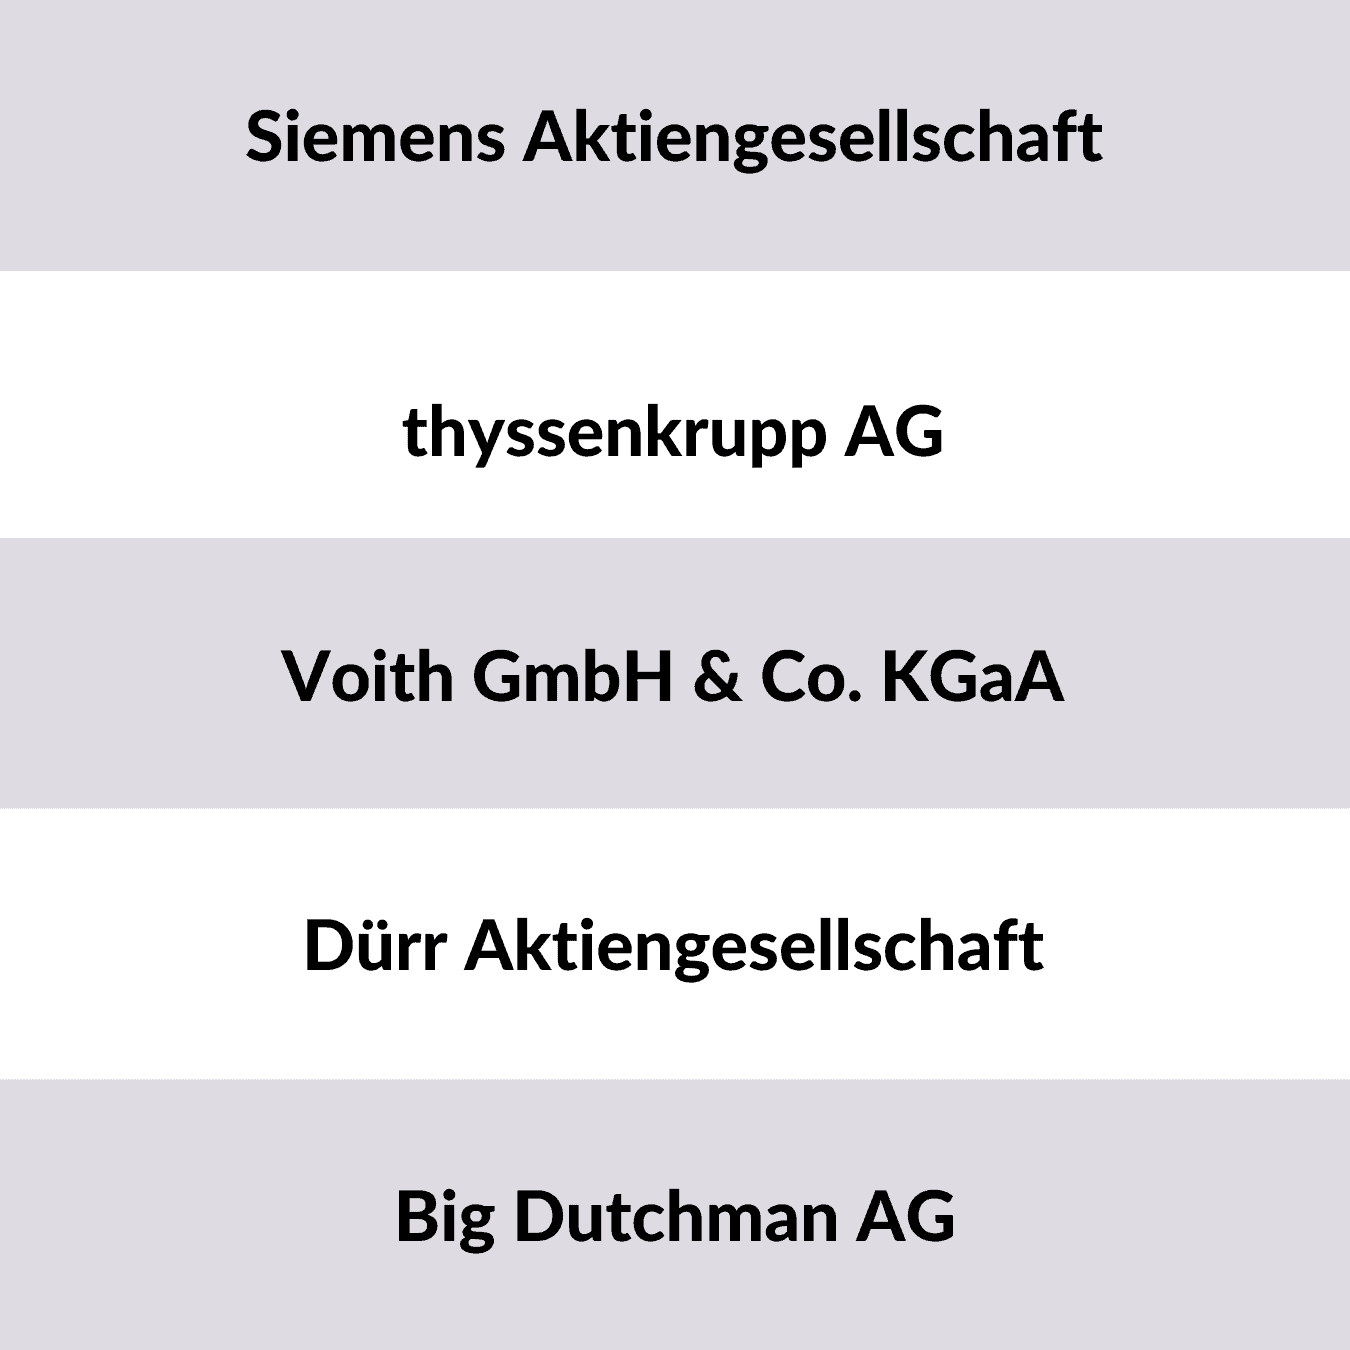 Beispiele von deutschen Anlagenbauern